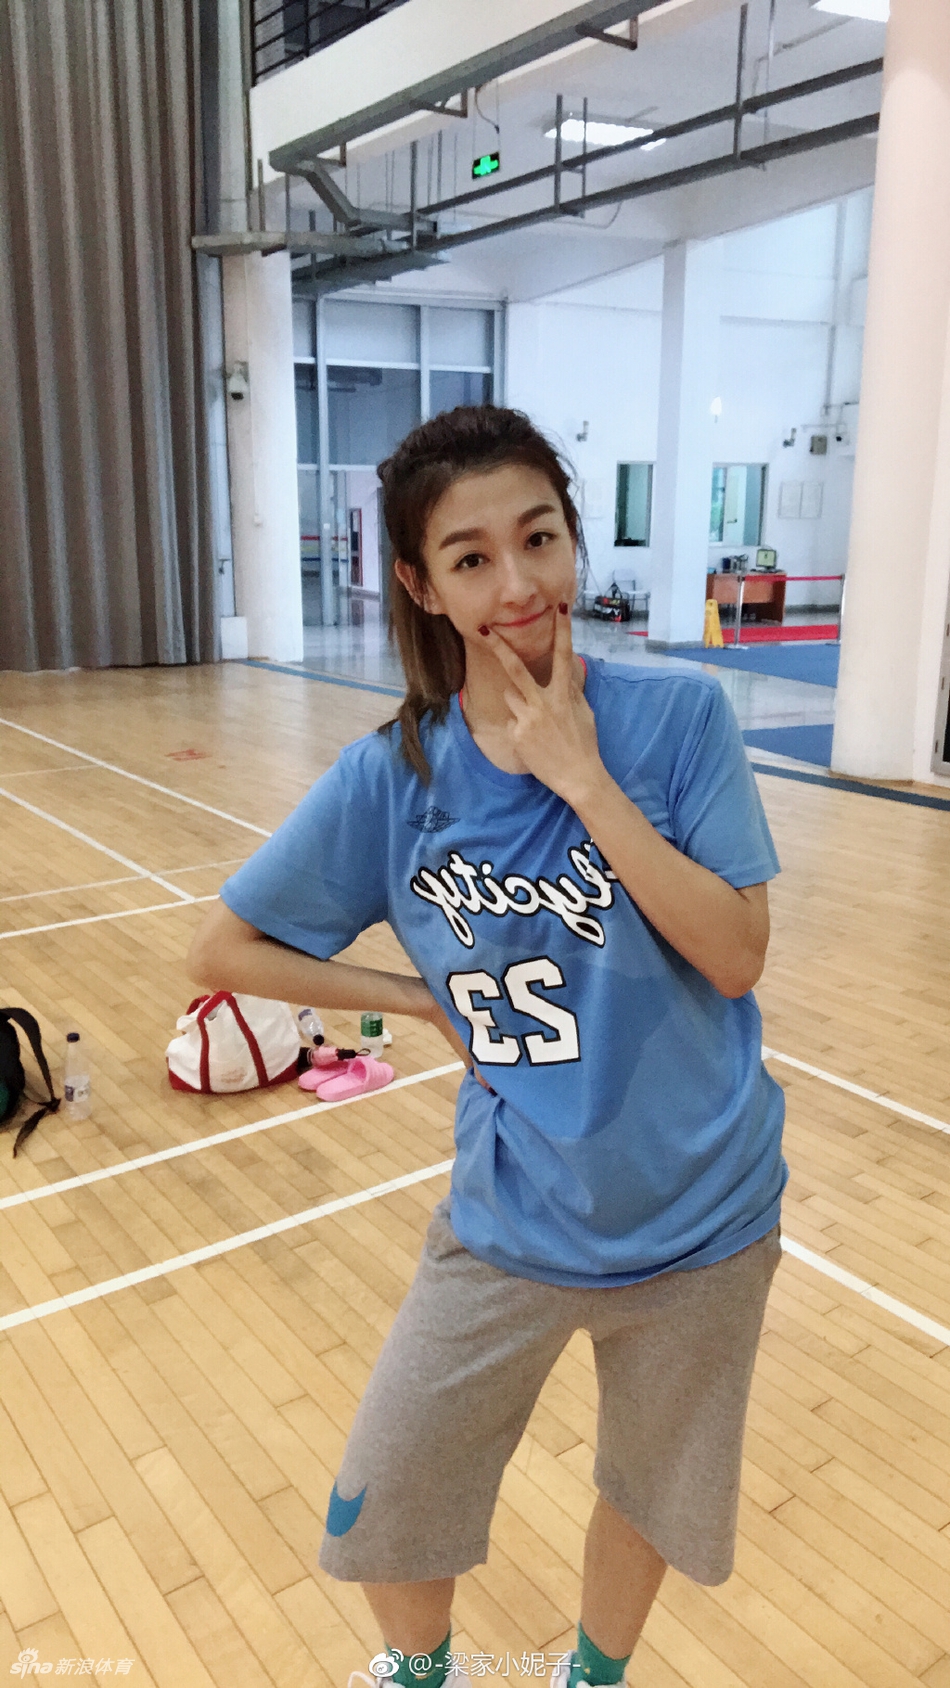 @-梁家小妮子- 是深圳大学研究生女子篮球队Knight的一员，球技这么好的学霸小姐姐，你想和她一起打球嘛？10月7日-9日，3X3黄金联赛全国总决赛，看她在球场上全力出击！